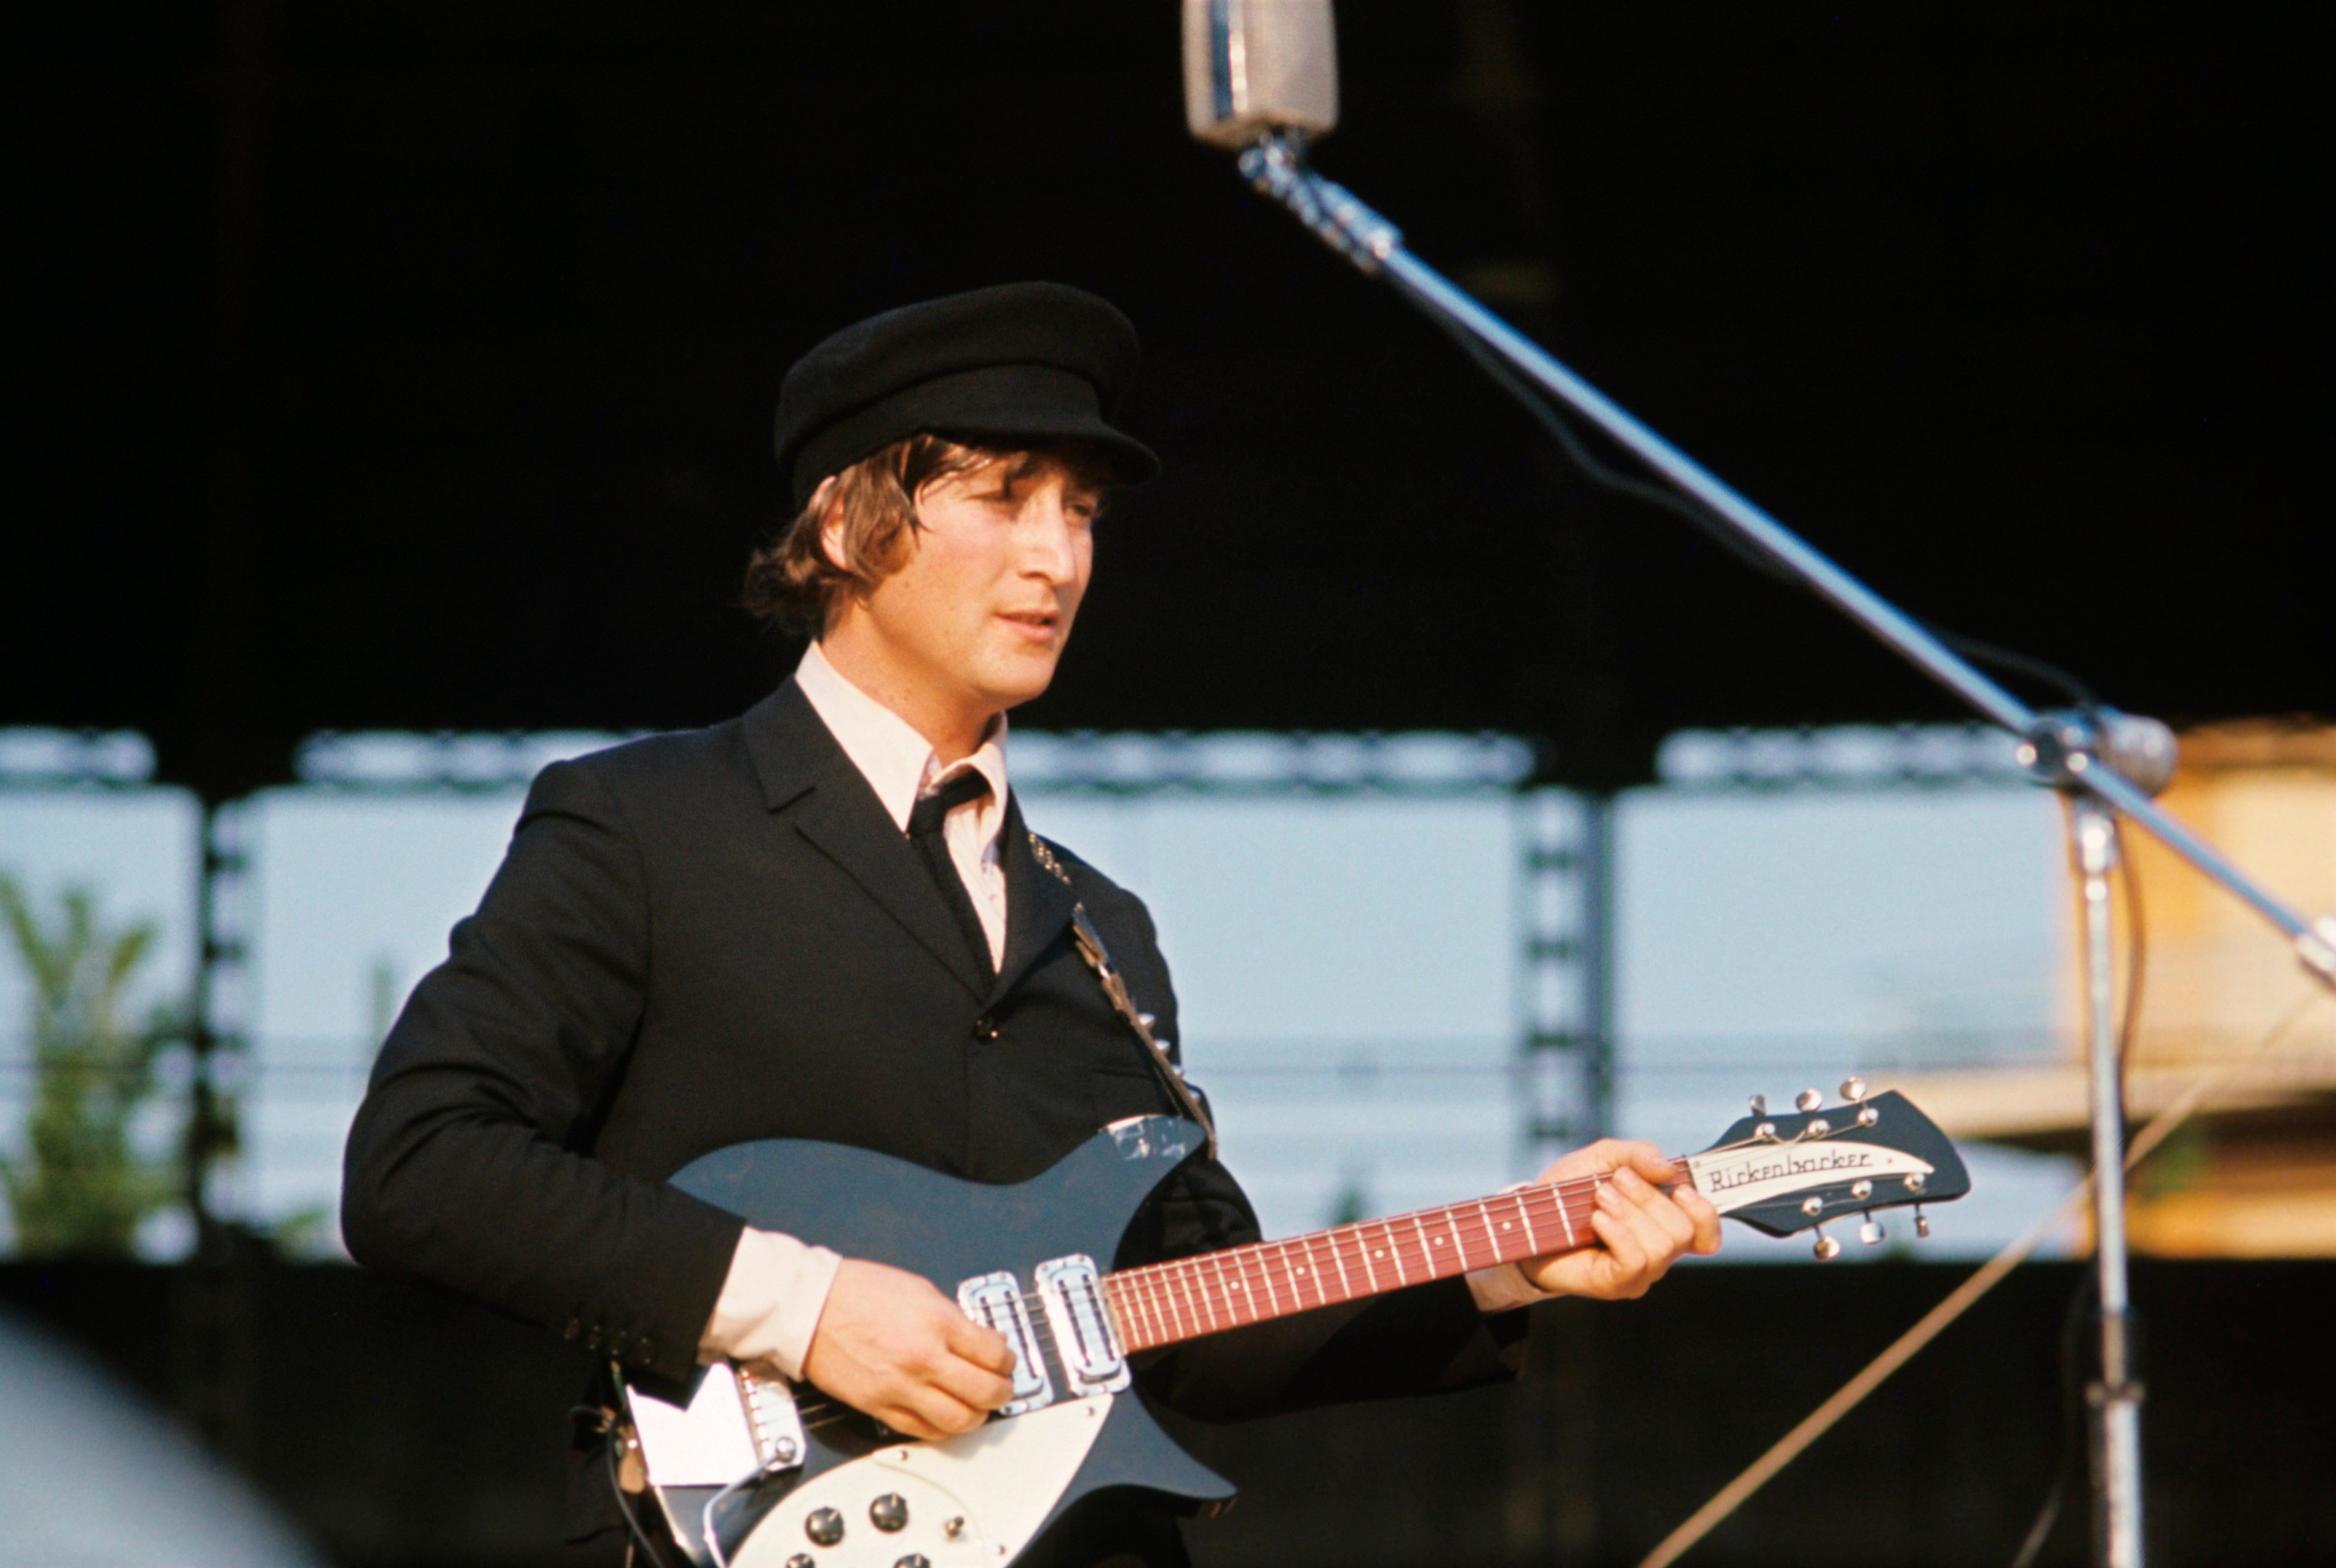 John Lennon with a blue guitar